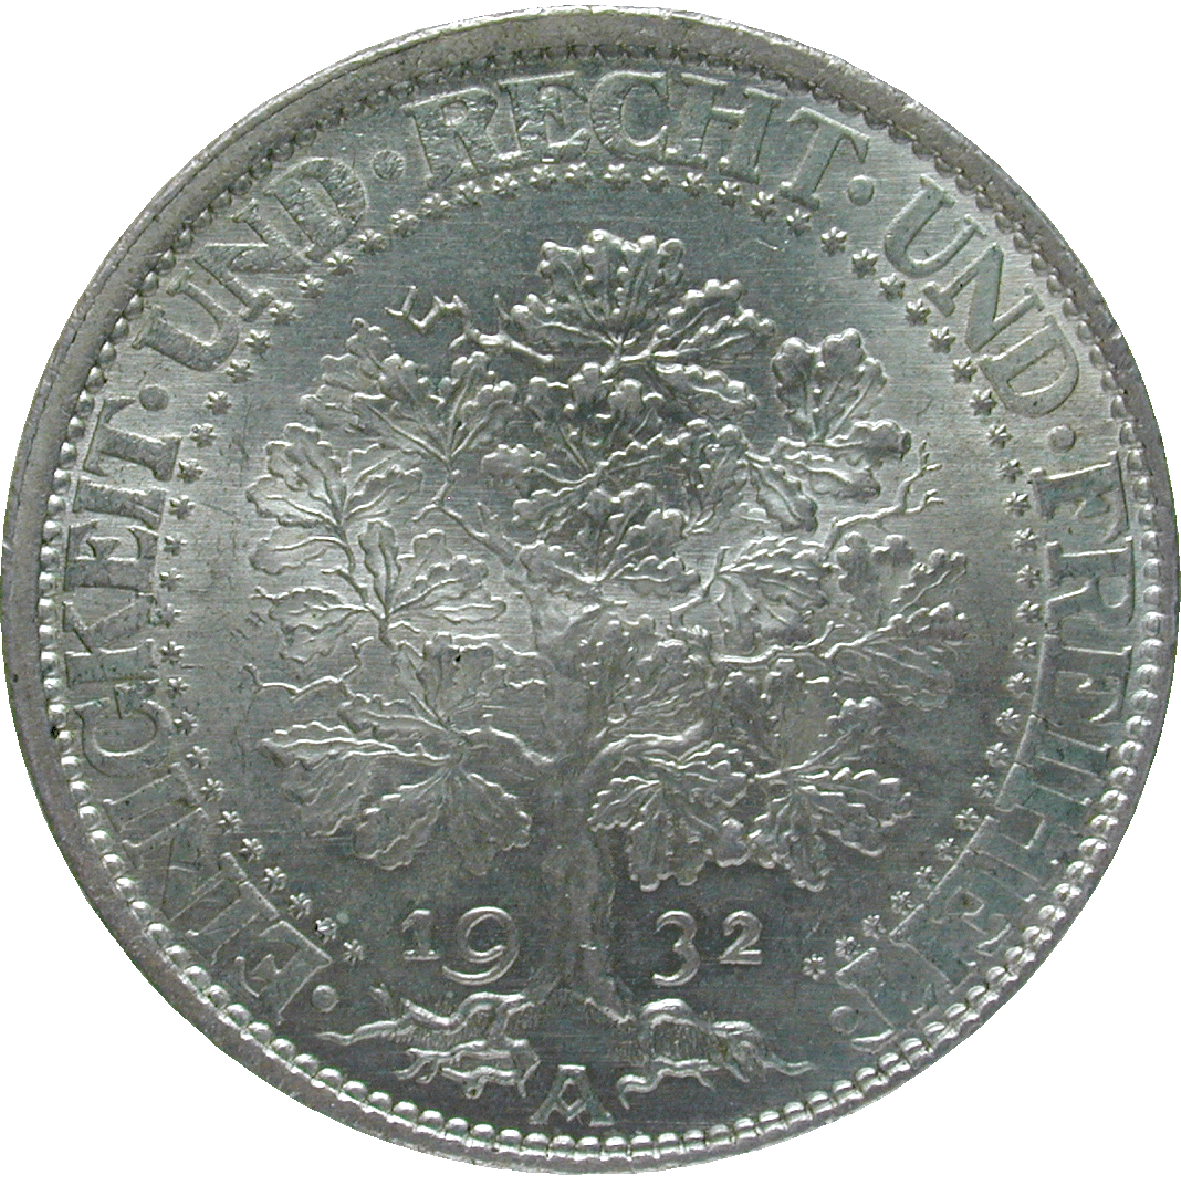 Deutsches Reich, Weimarer Republik, 5 Reichsmark 1932 (reverse)